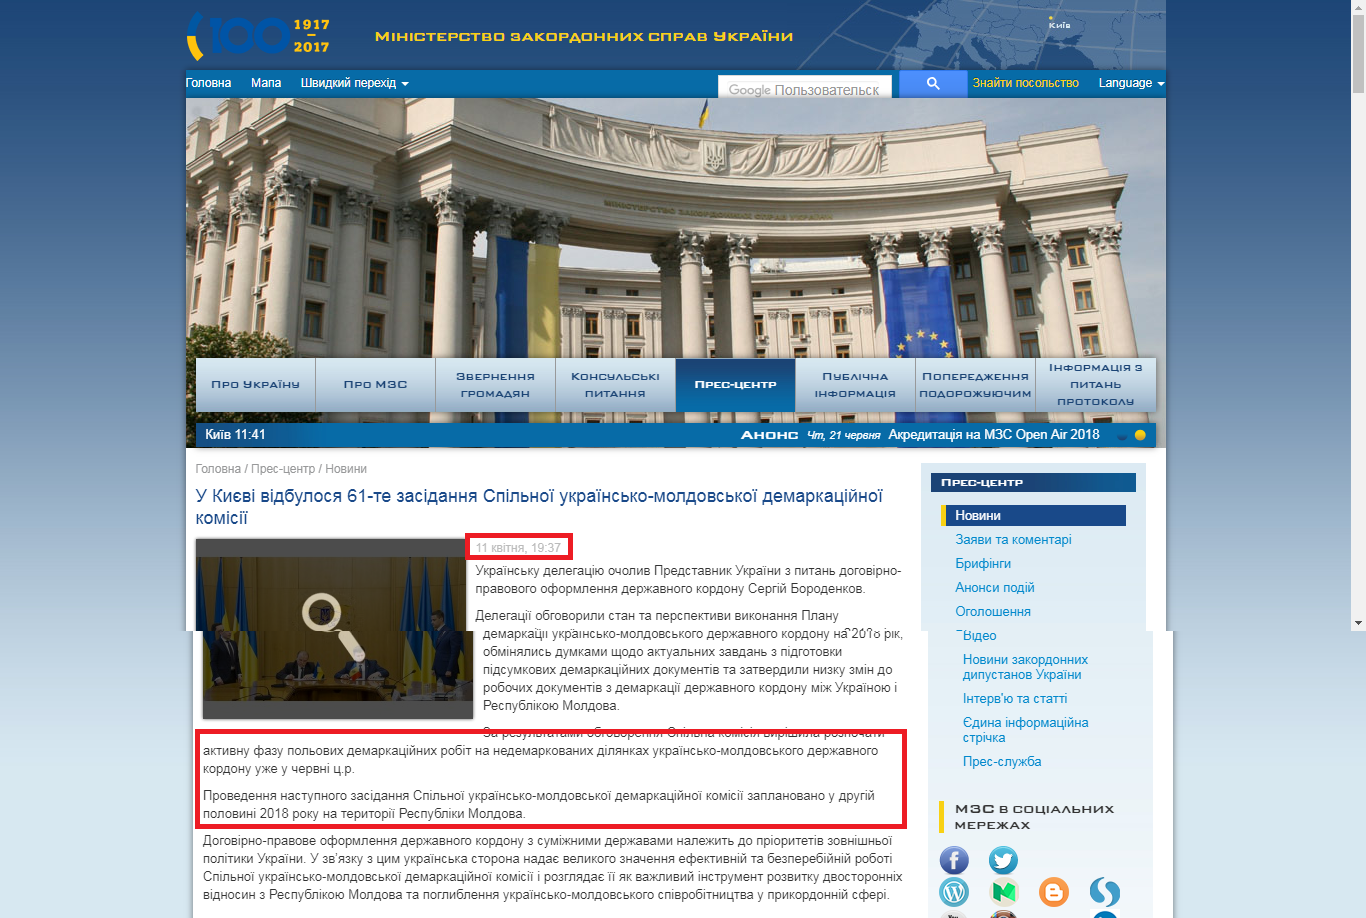 https://mfa.gov.ua/ua/press-center/news/64240-u-kijevi-vidbulosya-61-te-zasidannya-spilynoji-ukrajinsyko-moldovsykoji-demarkacijnoji-komisiji